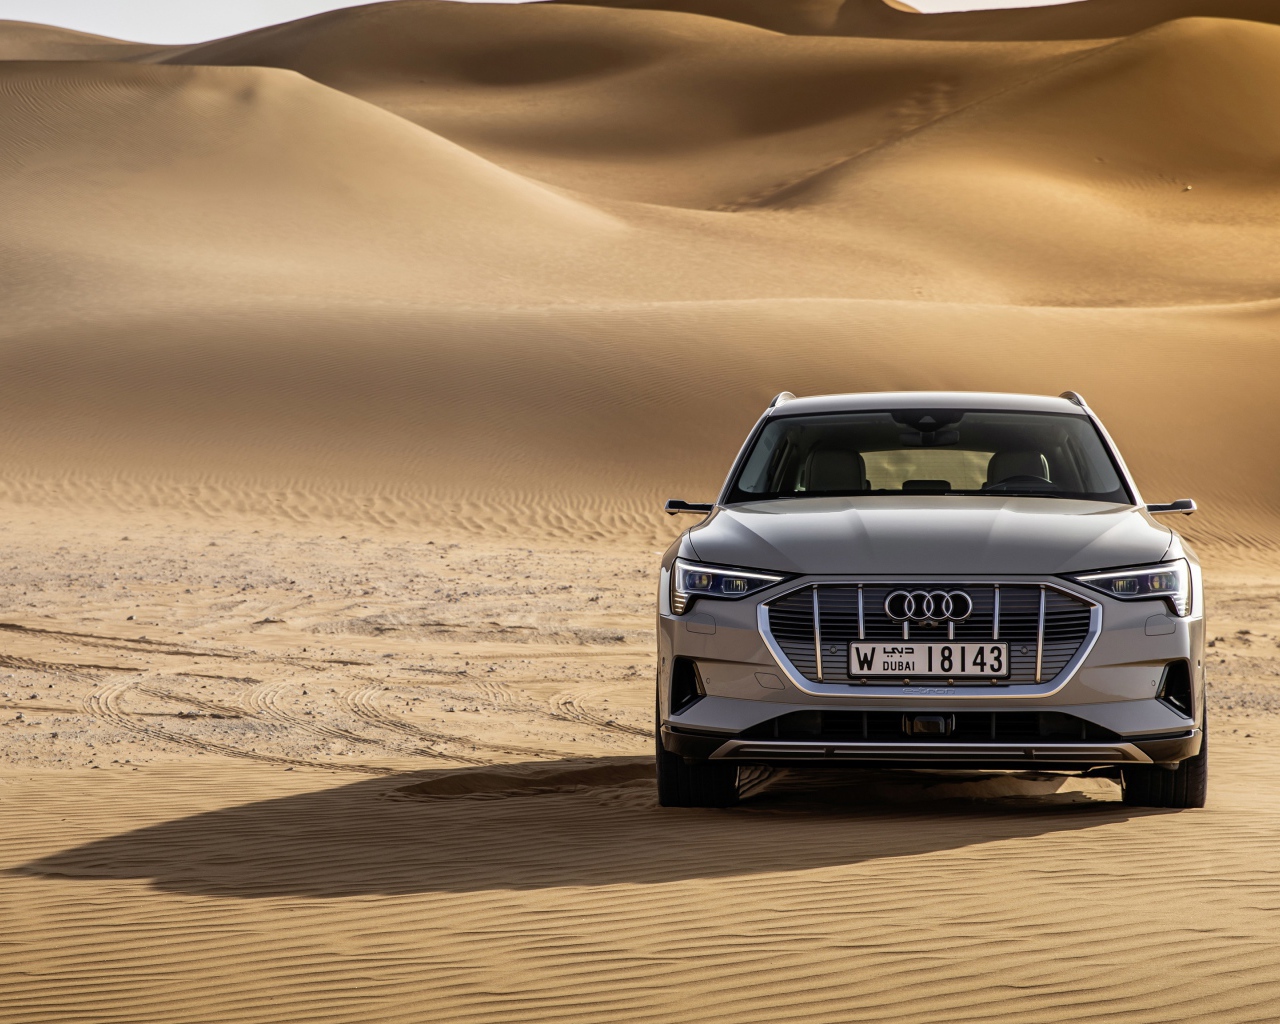 Серебристый автомобиль Audi E-tron Quattro в пустыни